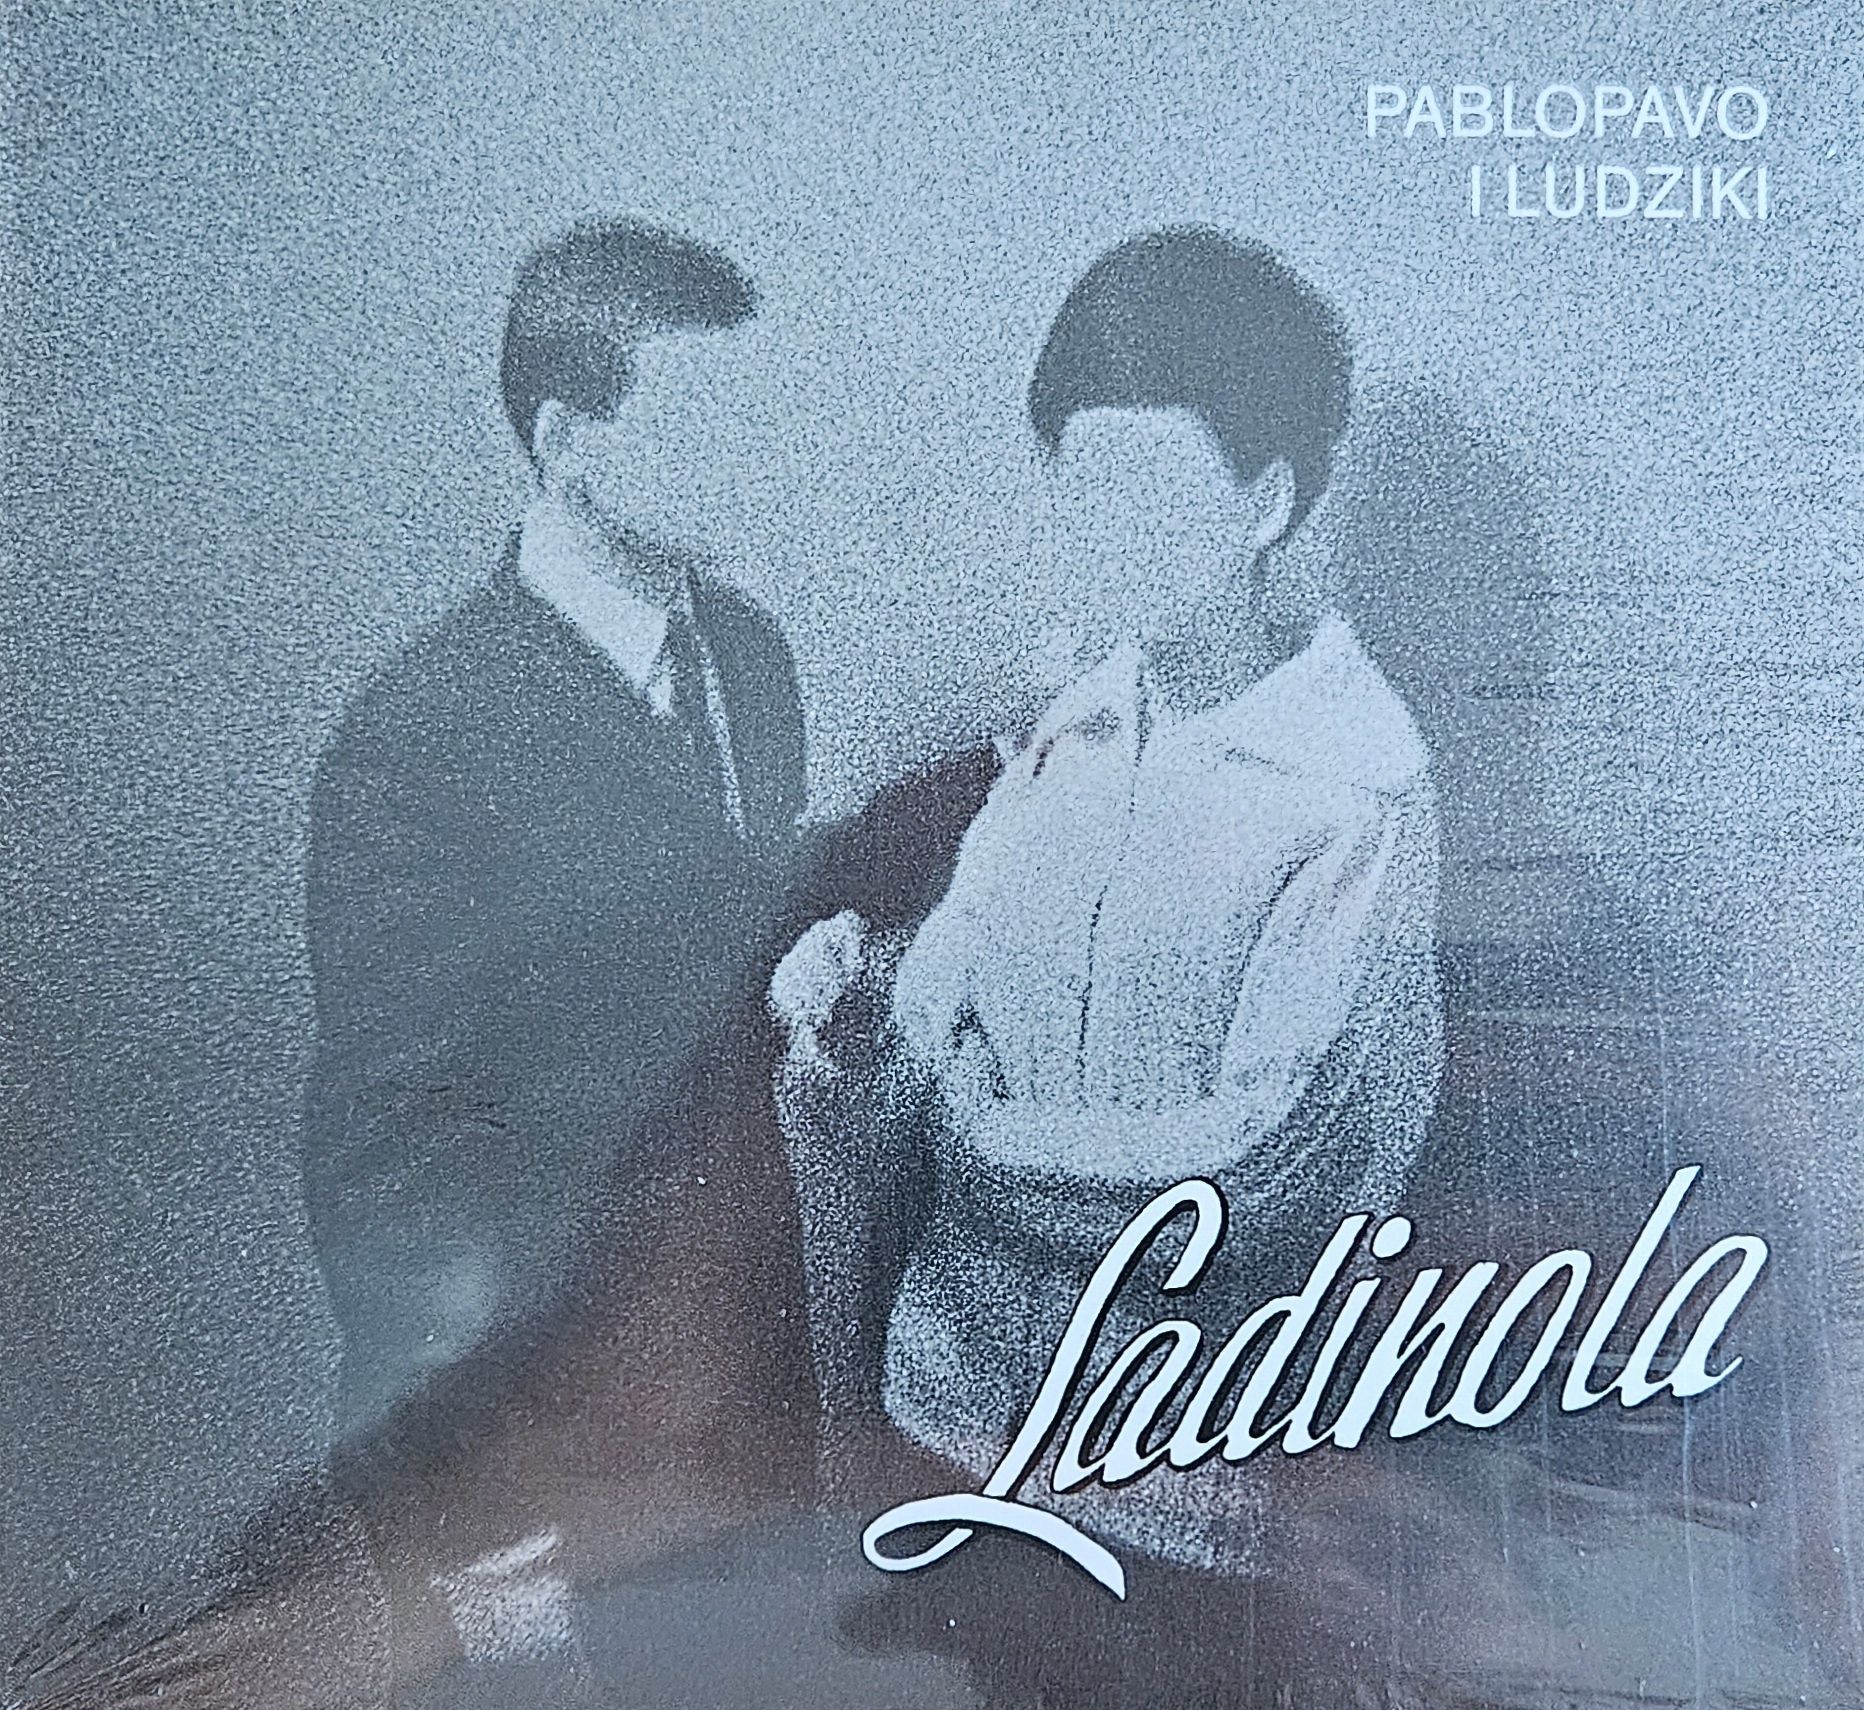 PABLOPAVO I LUDZIKI - Ladinola NOWA płyta CD
Pablopavo & Ludziki